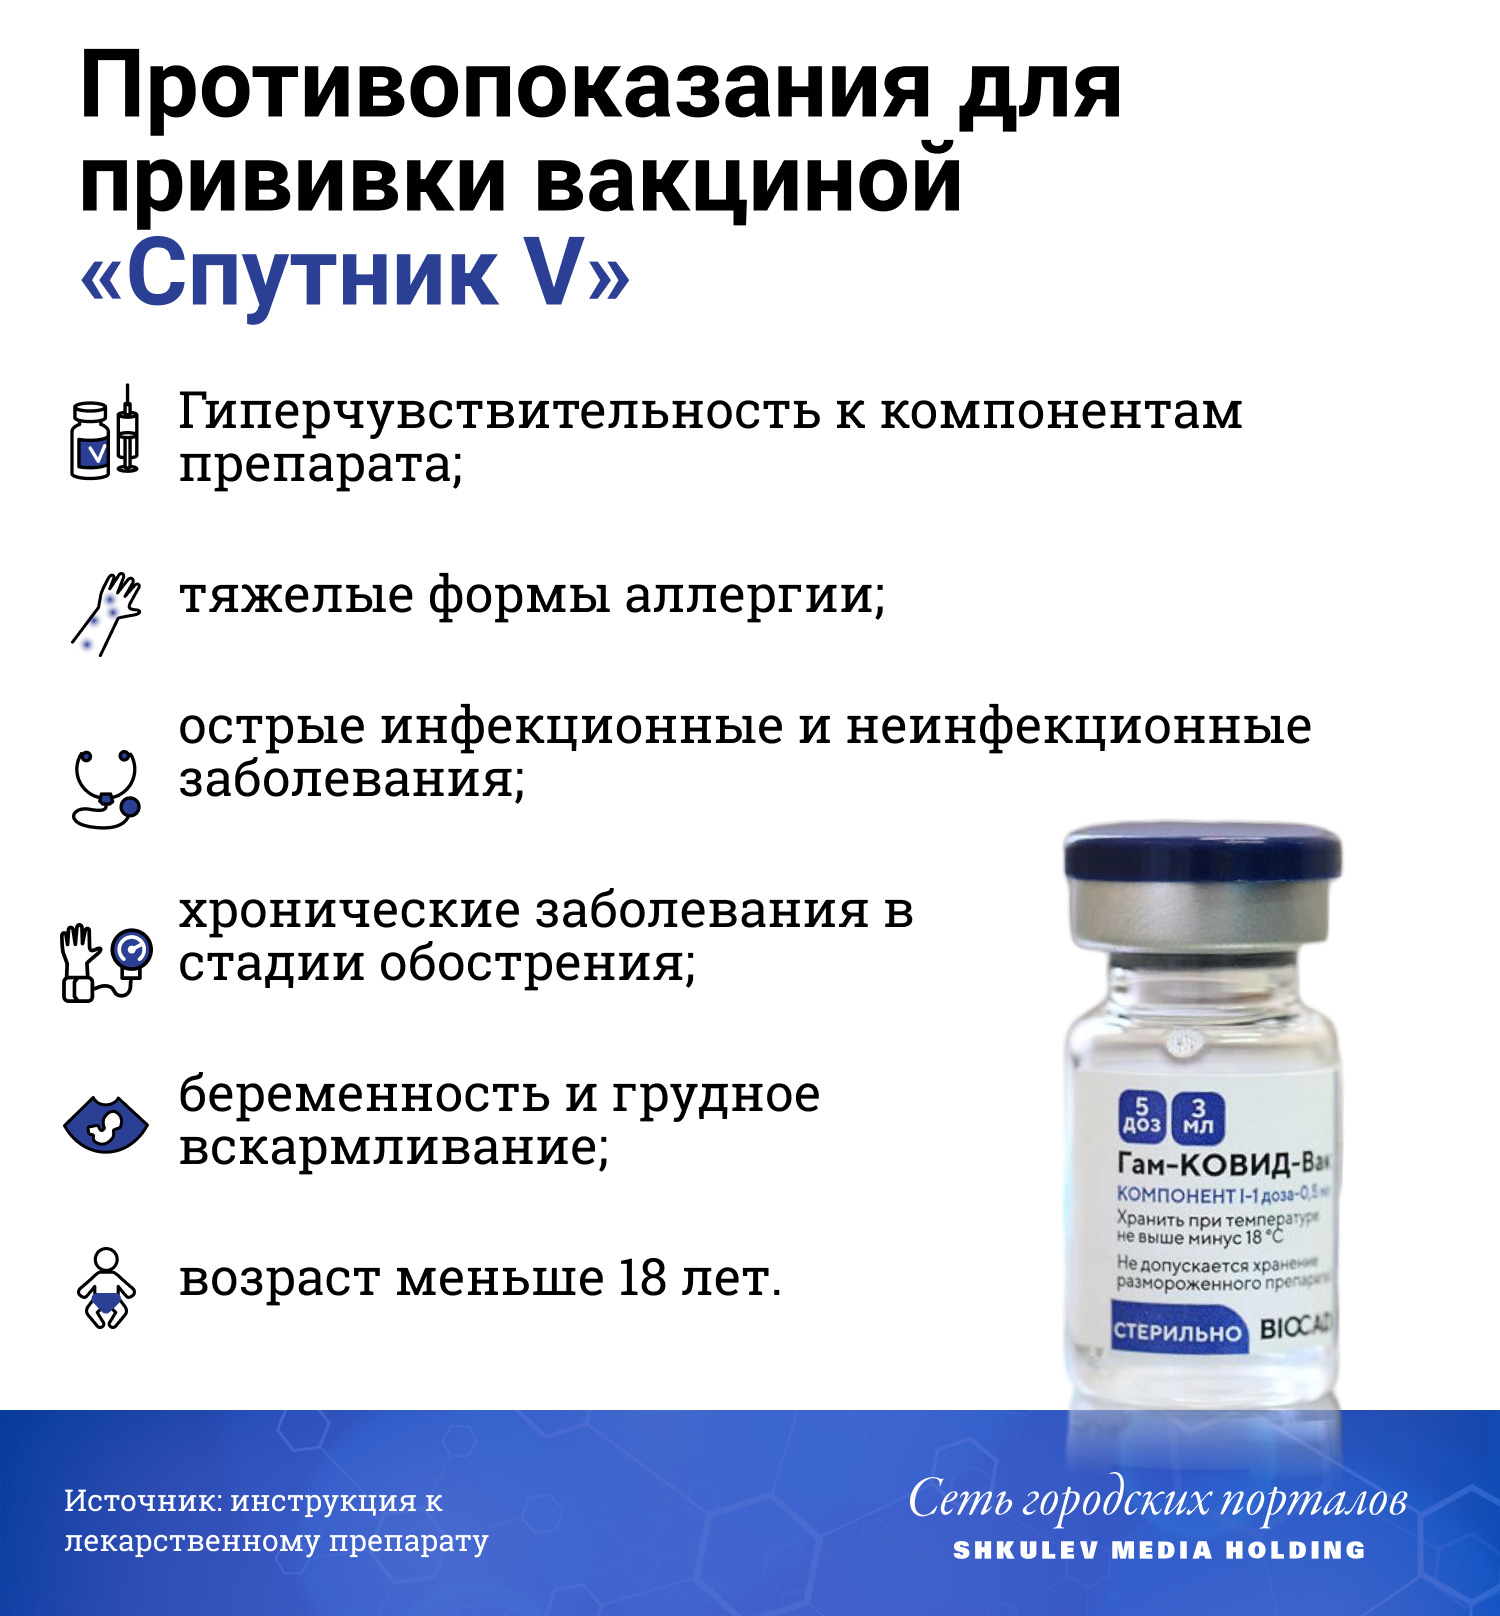 Названы все противопоказания российских вакцин от коронавируса COVID-19 - фото 2